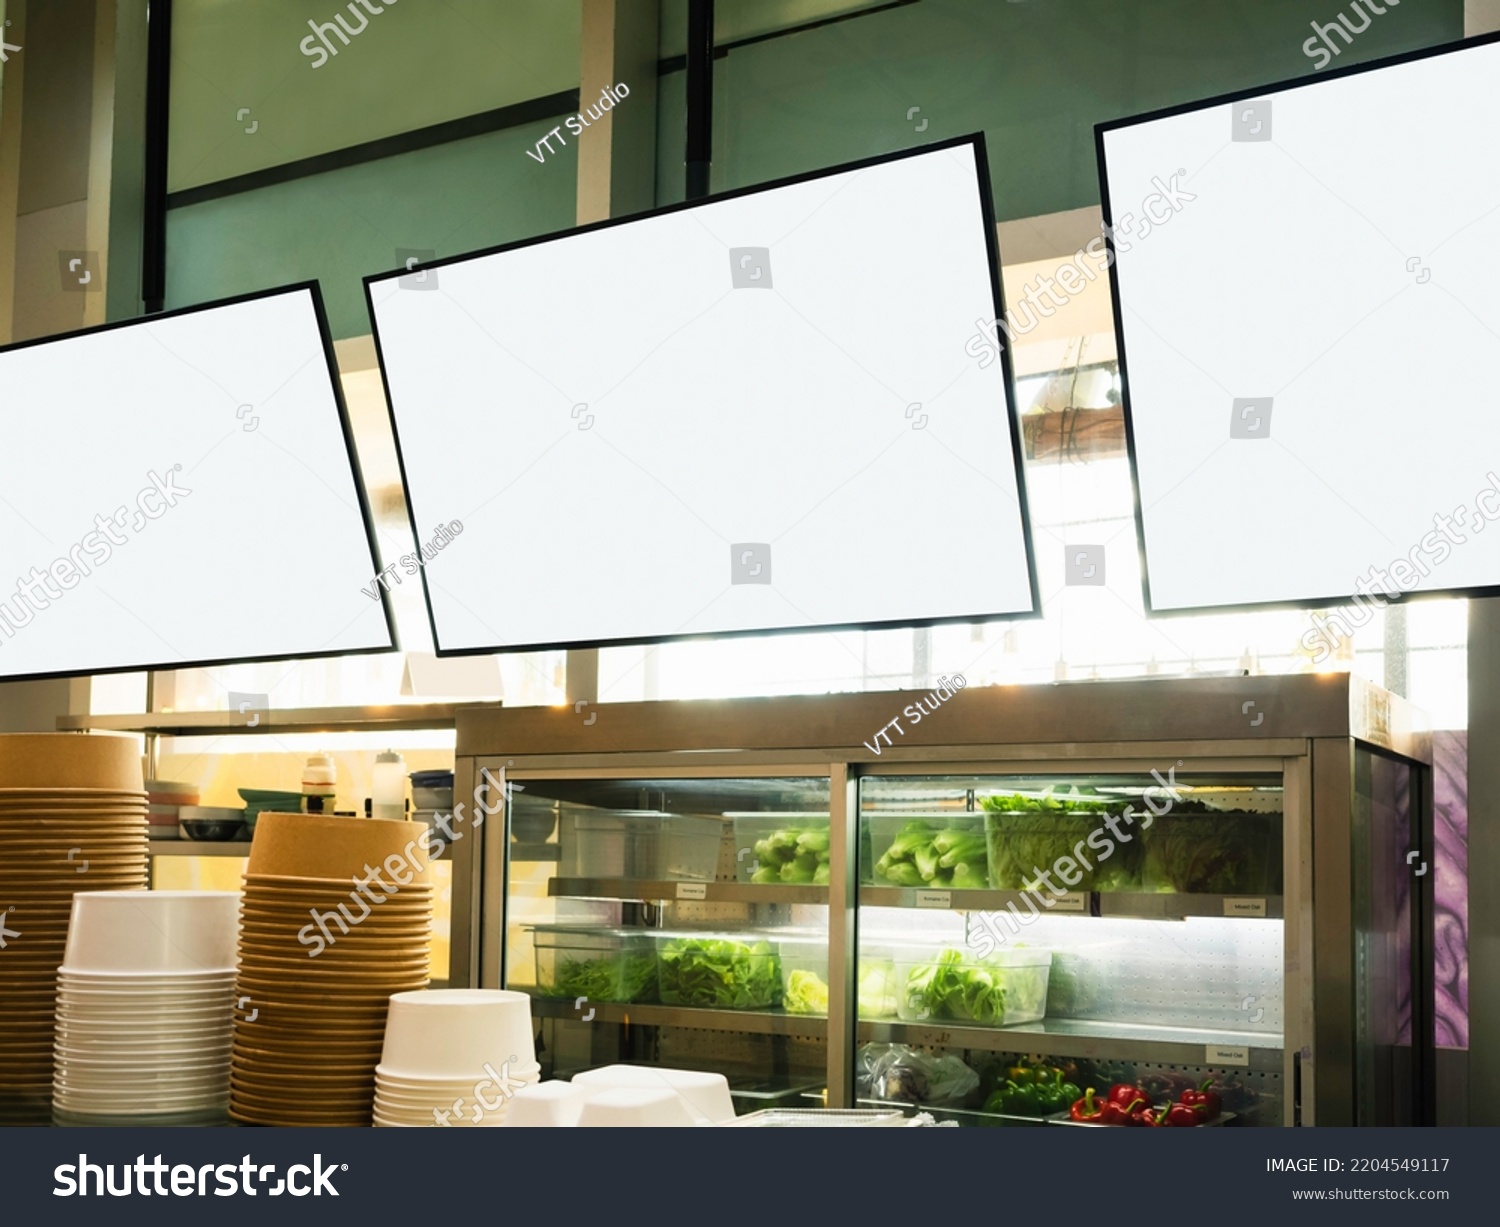 Mock up screen for Restaurant Menu Cafe Food Business  #2204549117